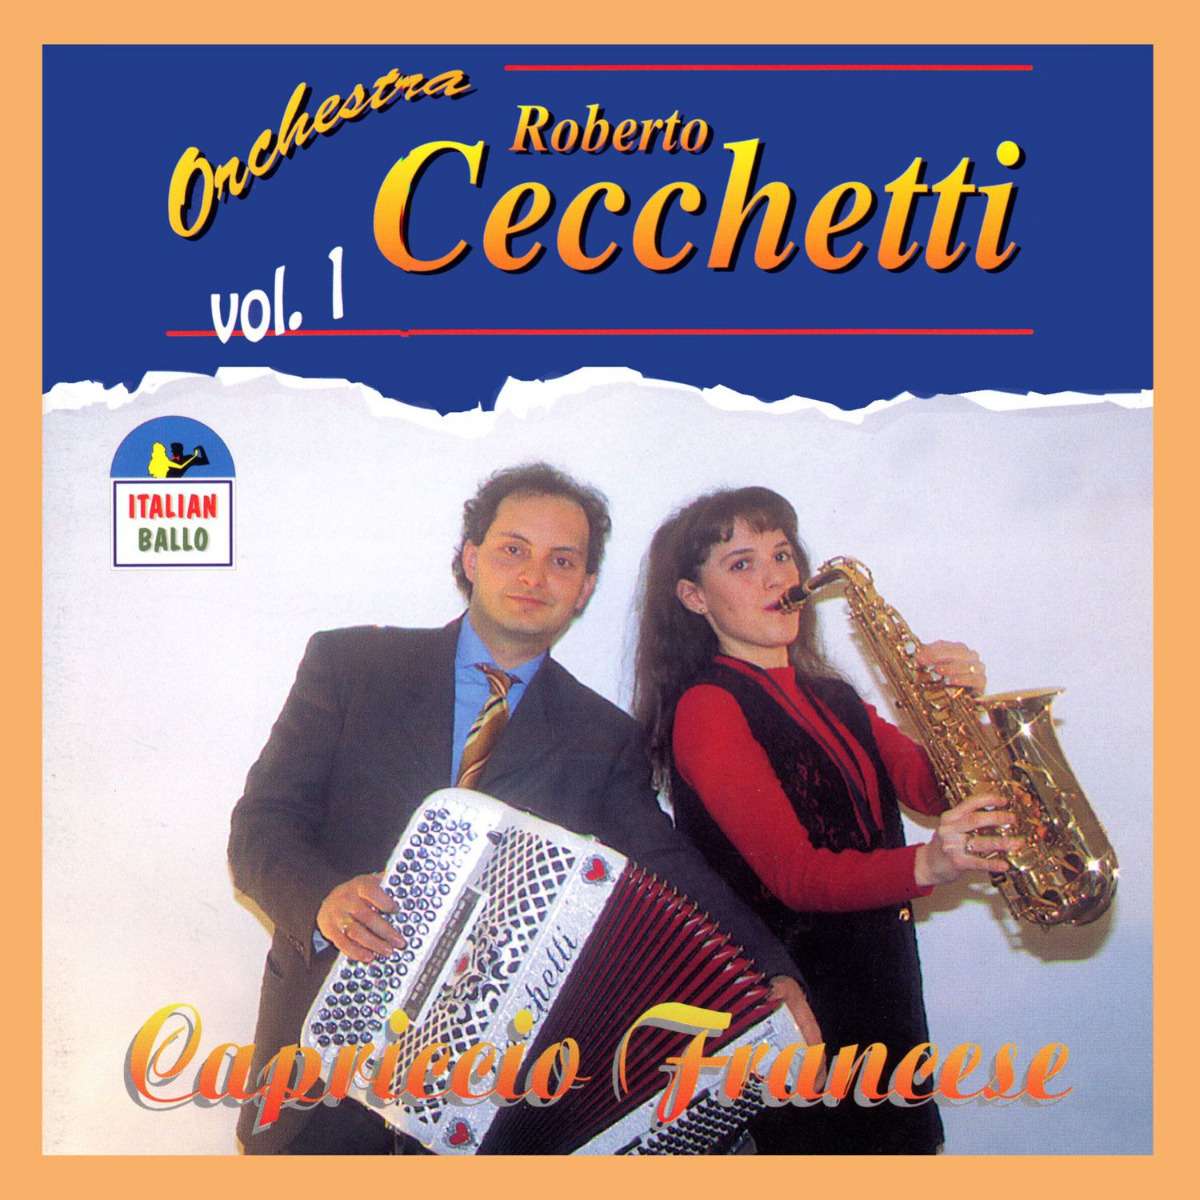 Orchestra Cecchetti - capriccio francese